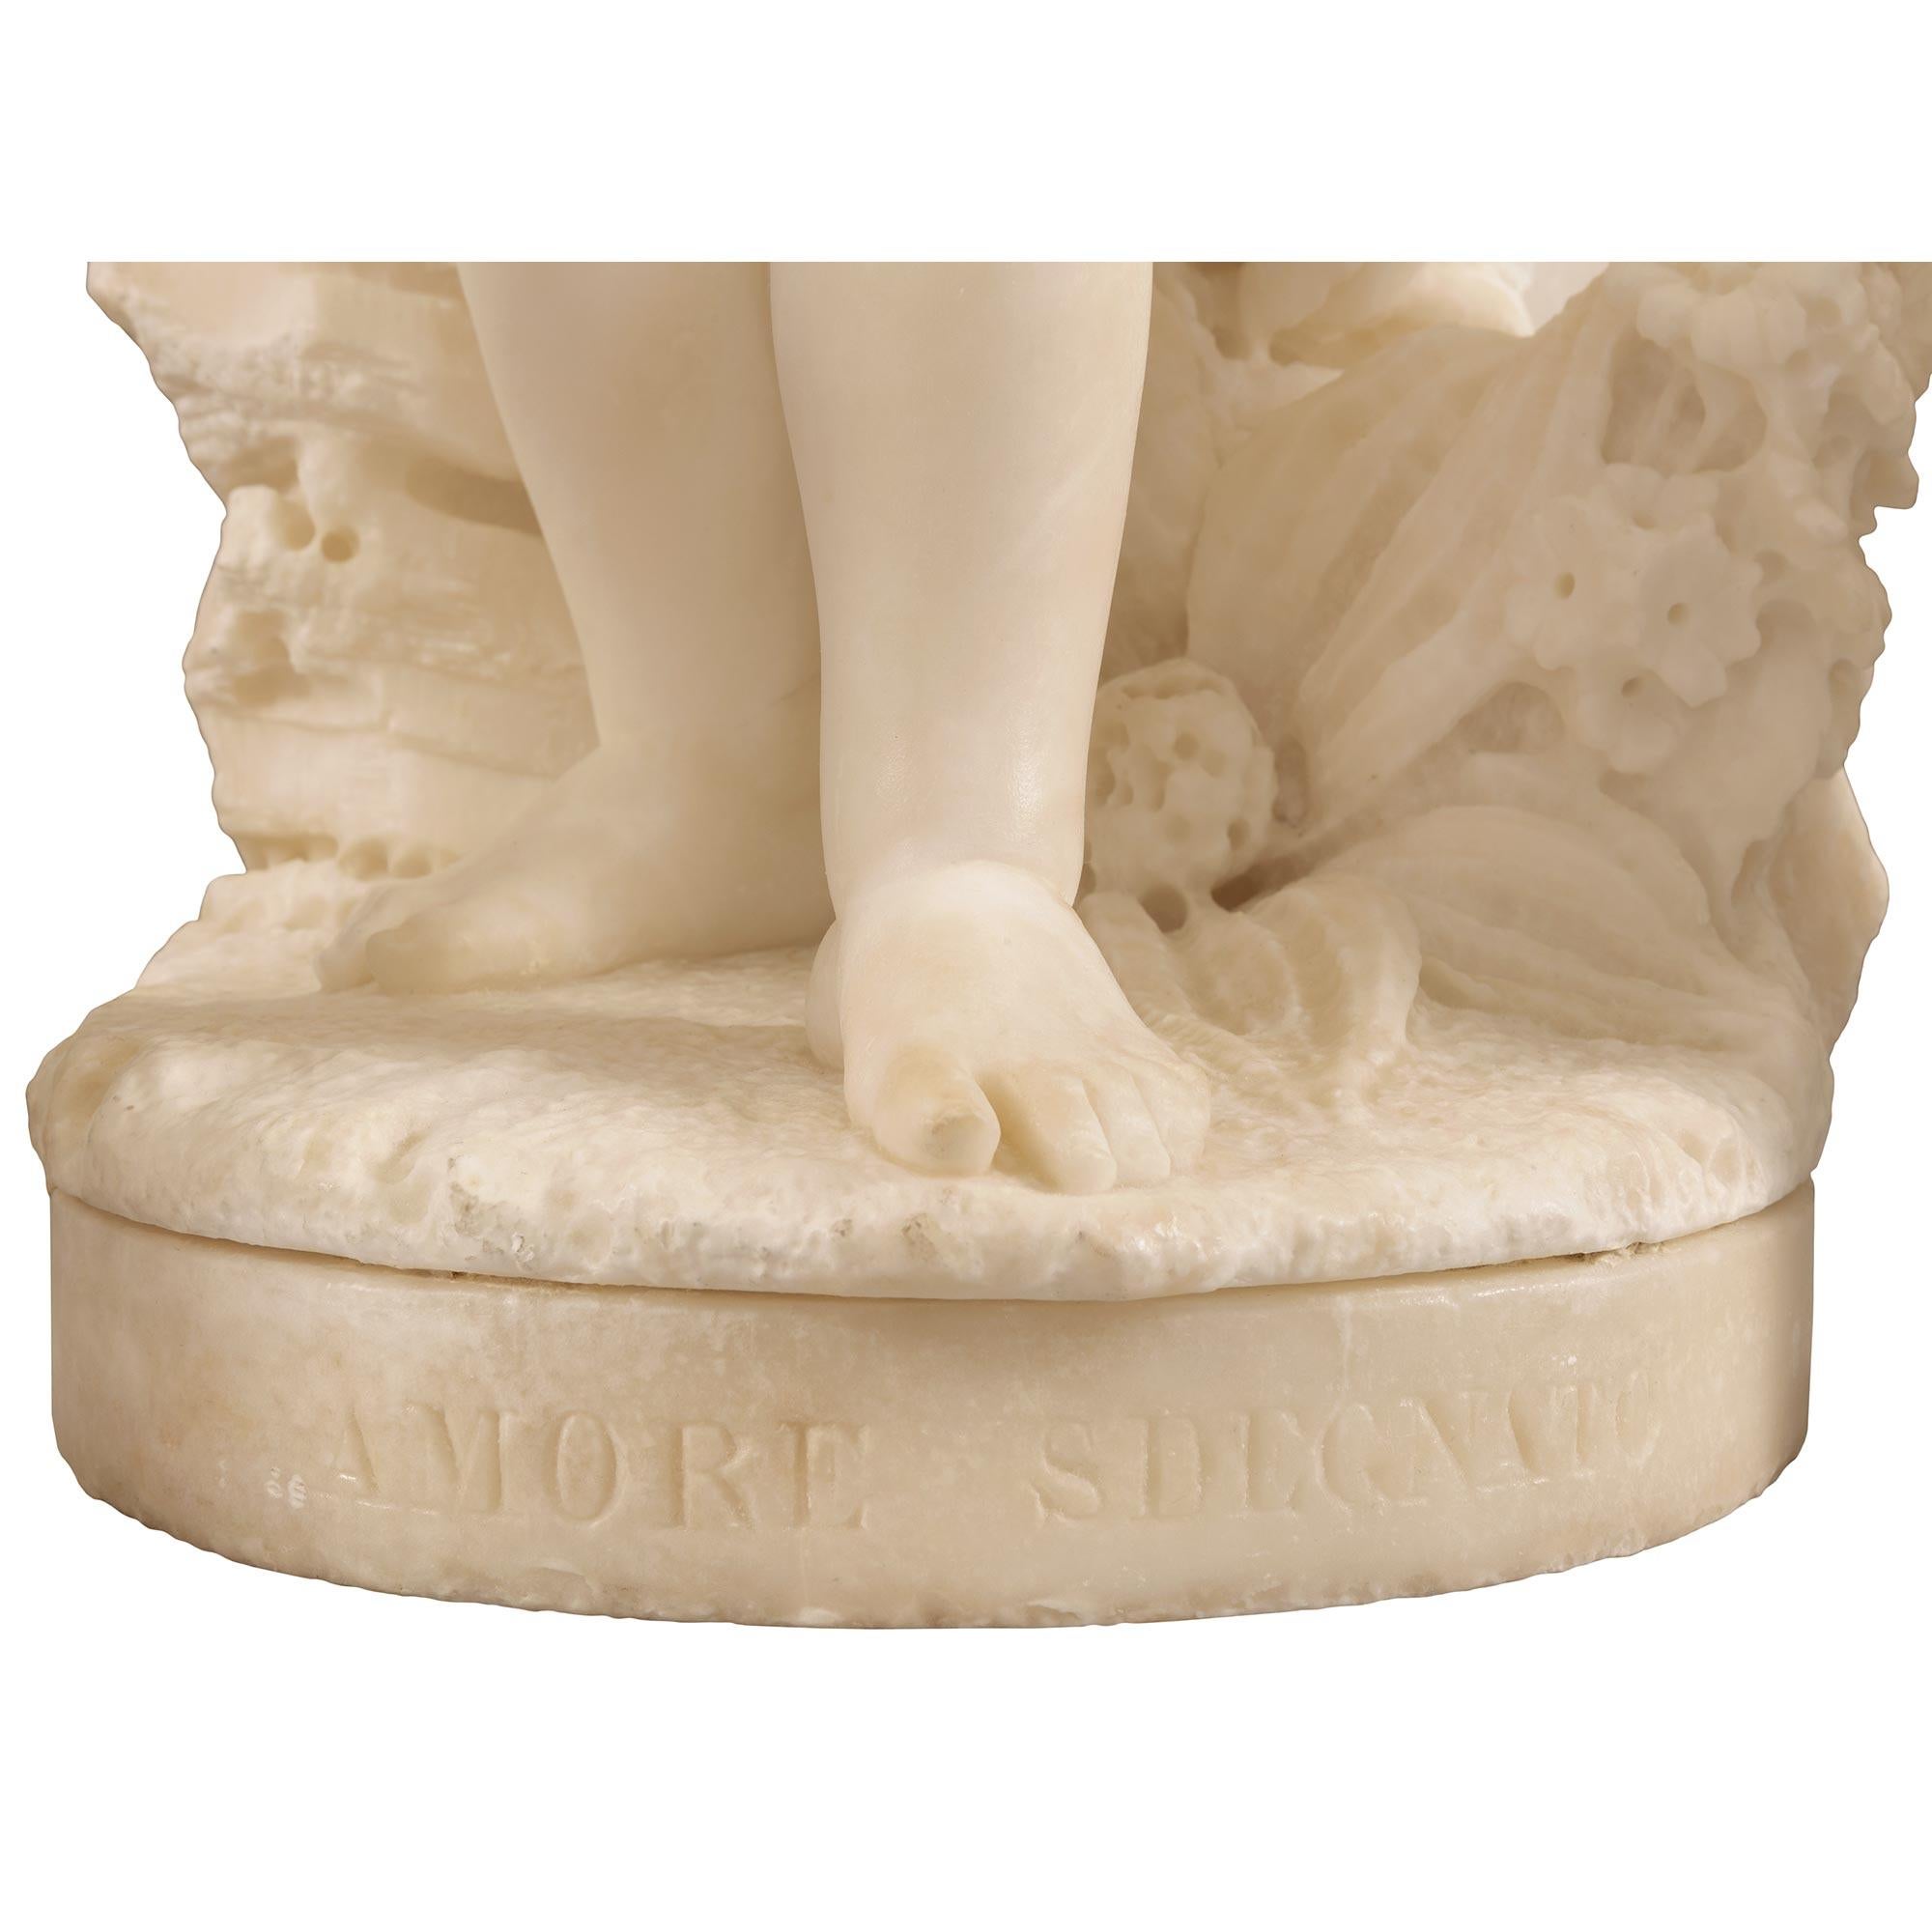 Italian 19th Century White Carrara Marble Statue Titled “Amore Sdegnato” For Sale 9